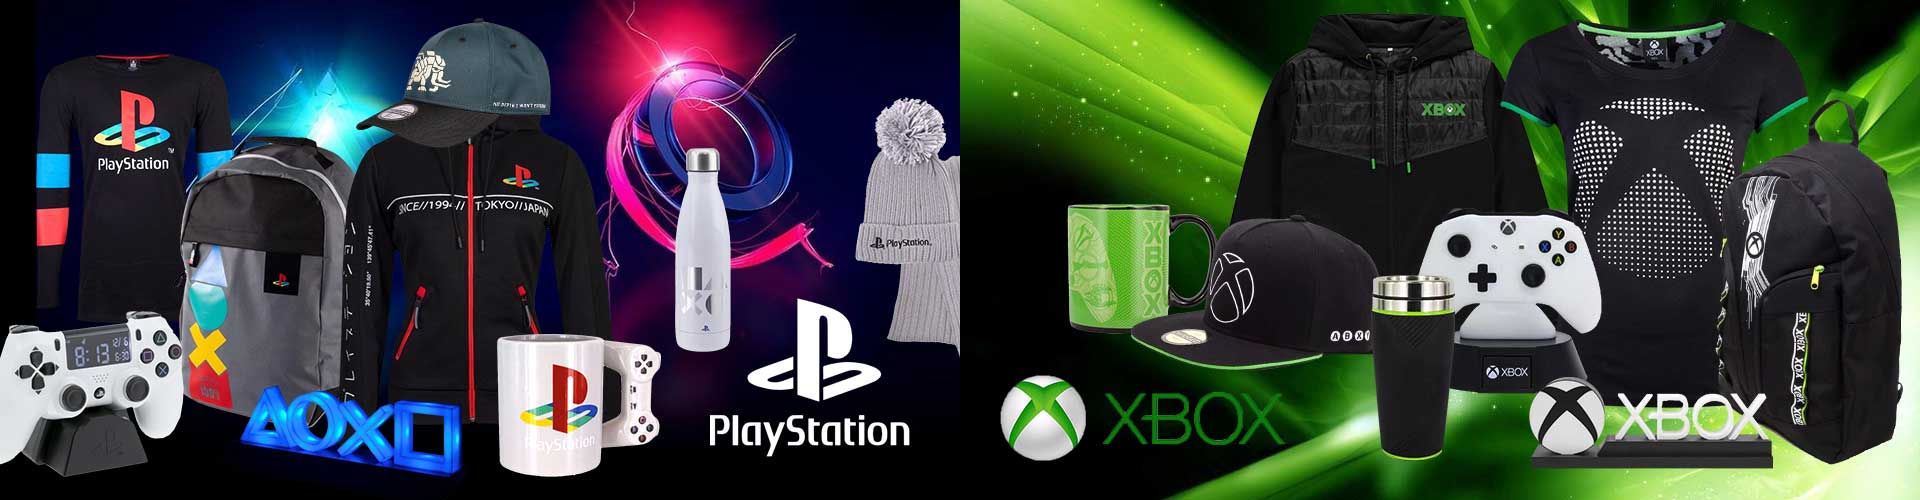 Playstation_Xbox